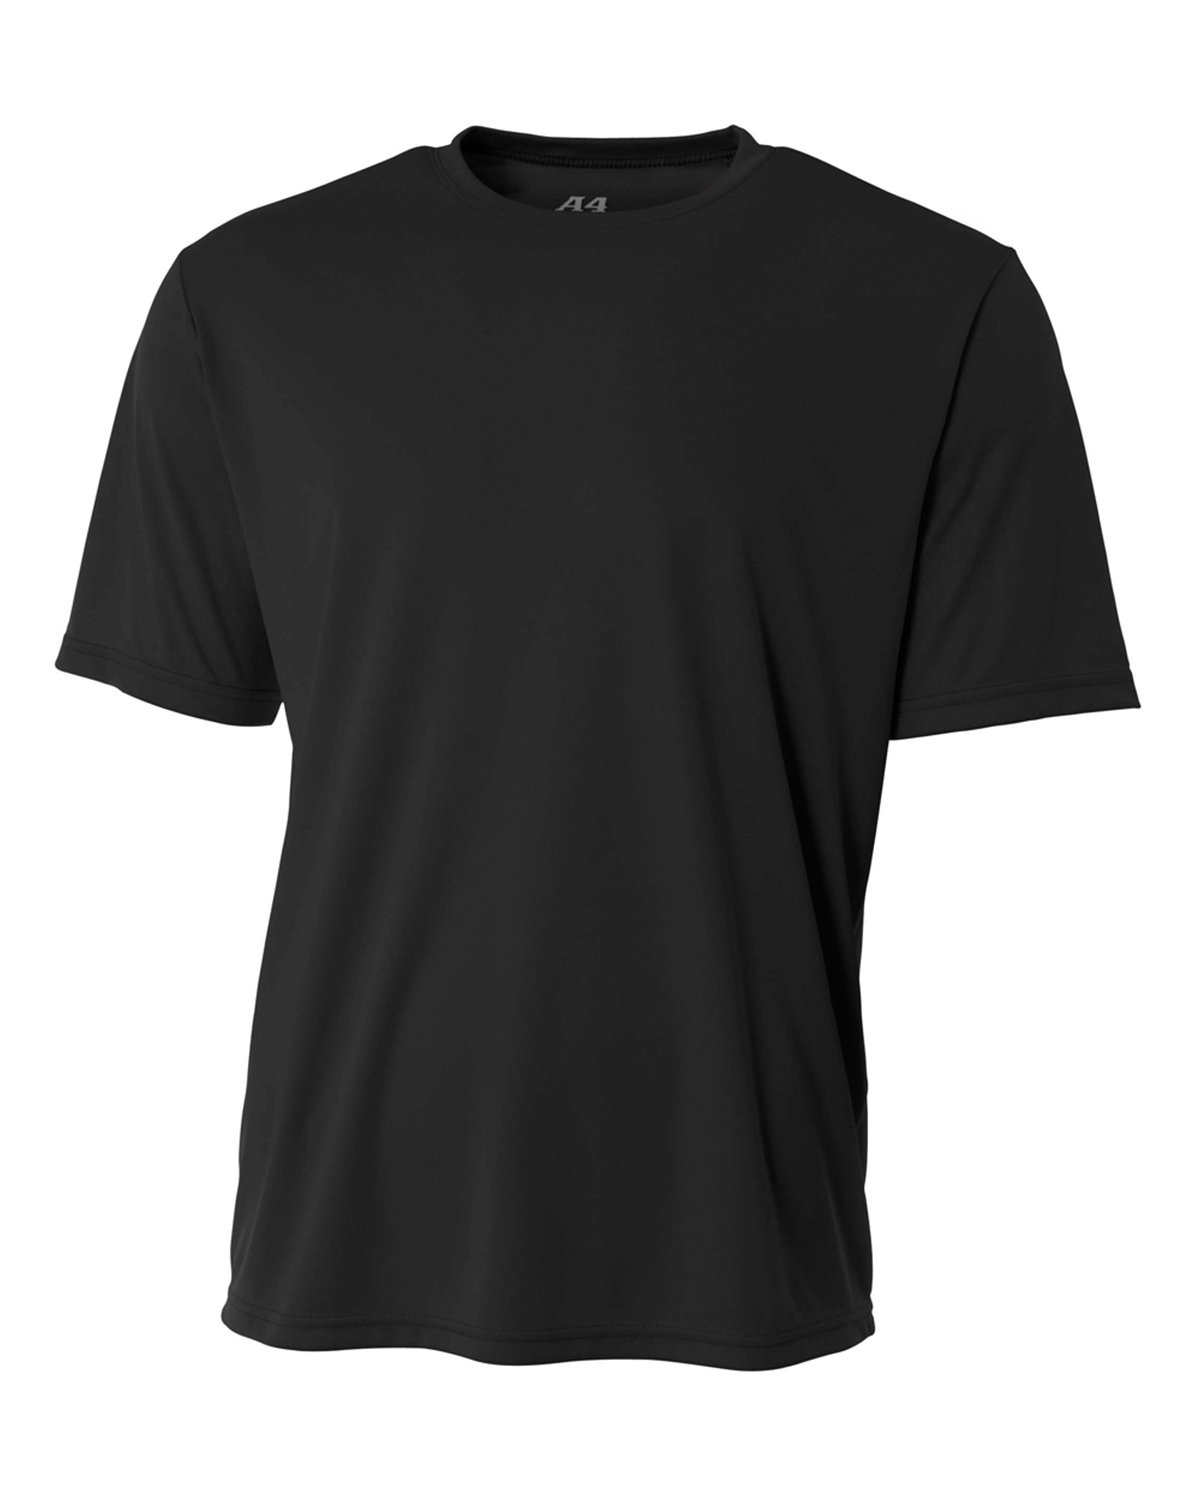 A4 Men\'s Cooling Performance T-Shirt | alphabroder